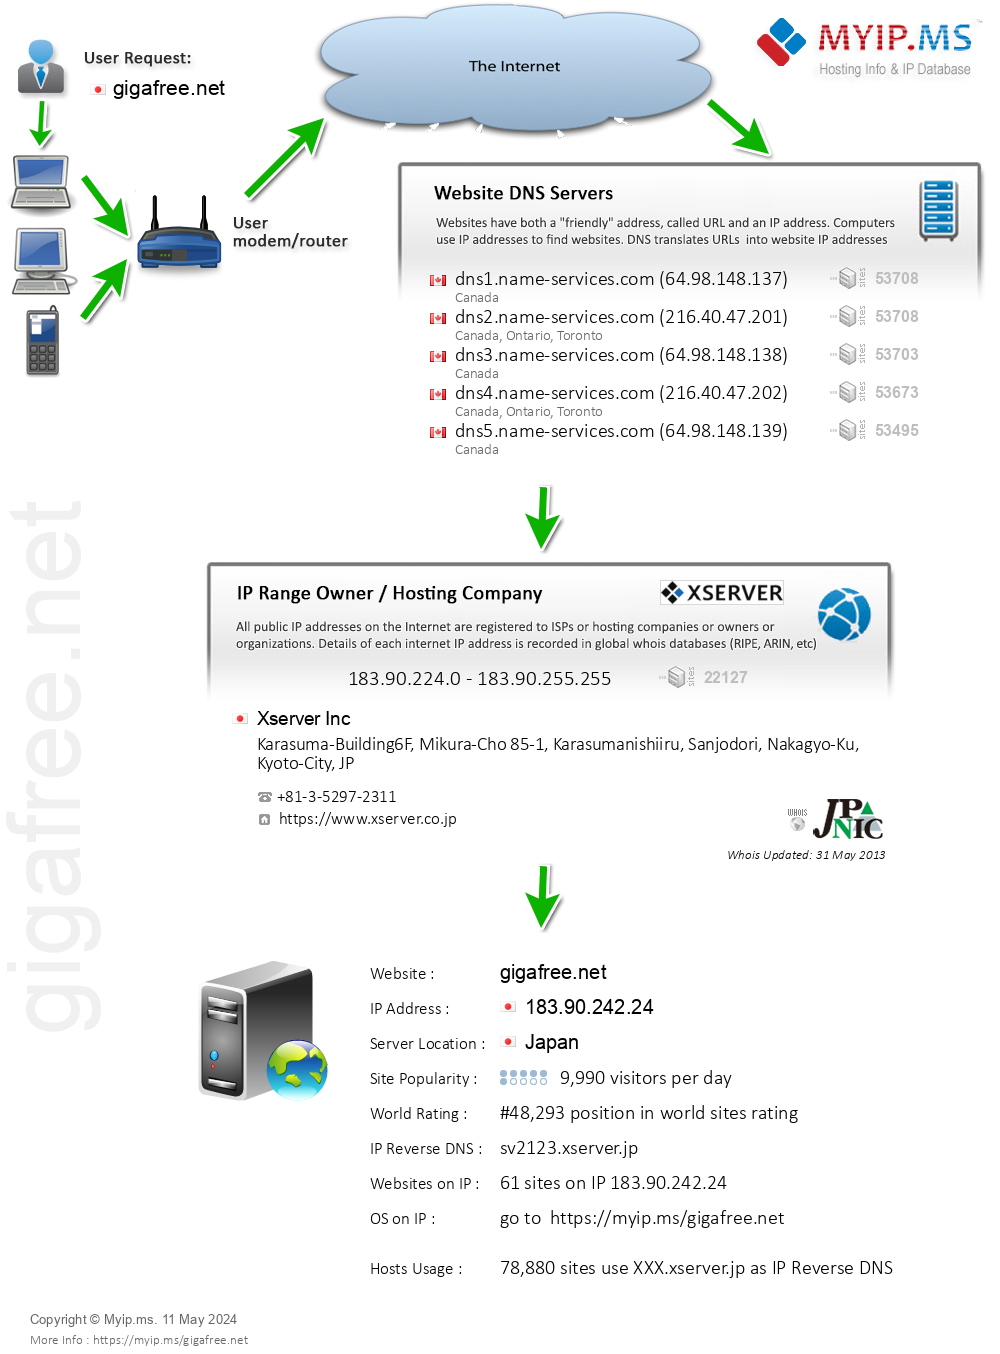 Gigafree.net - Website Hosting Visual IP Diagram